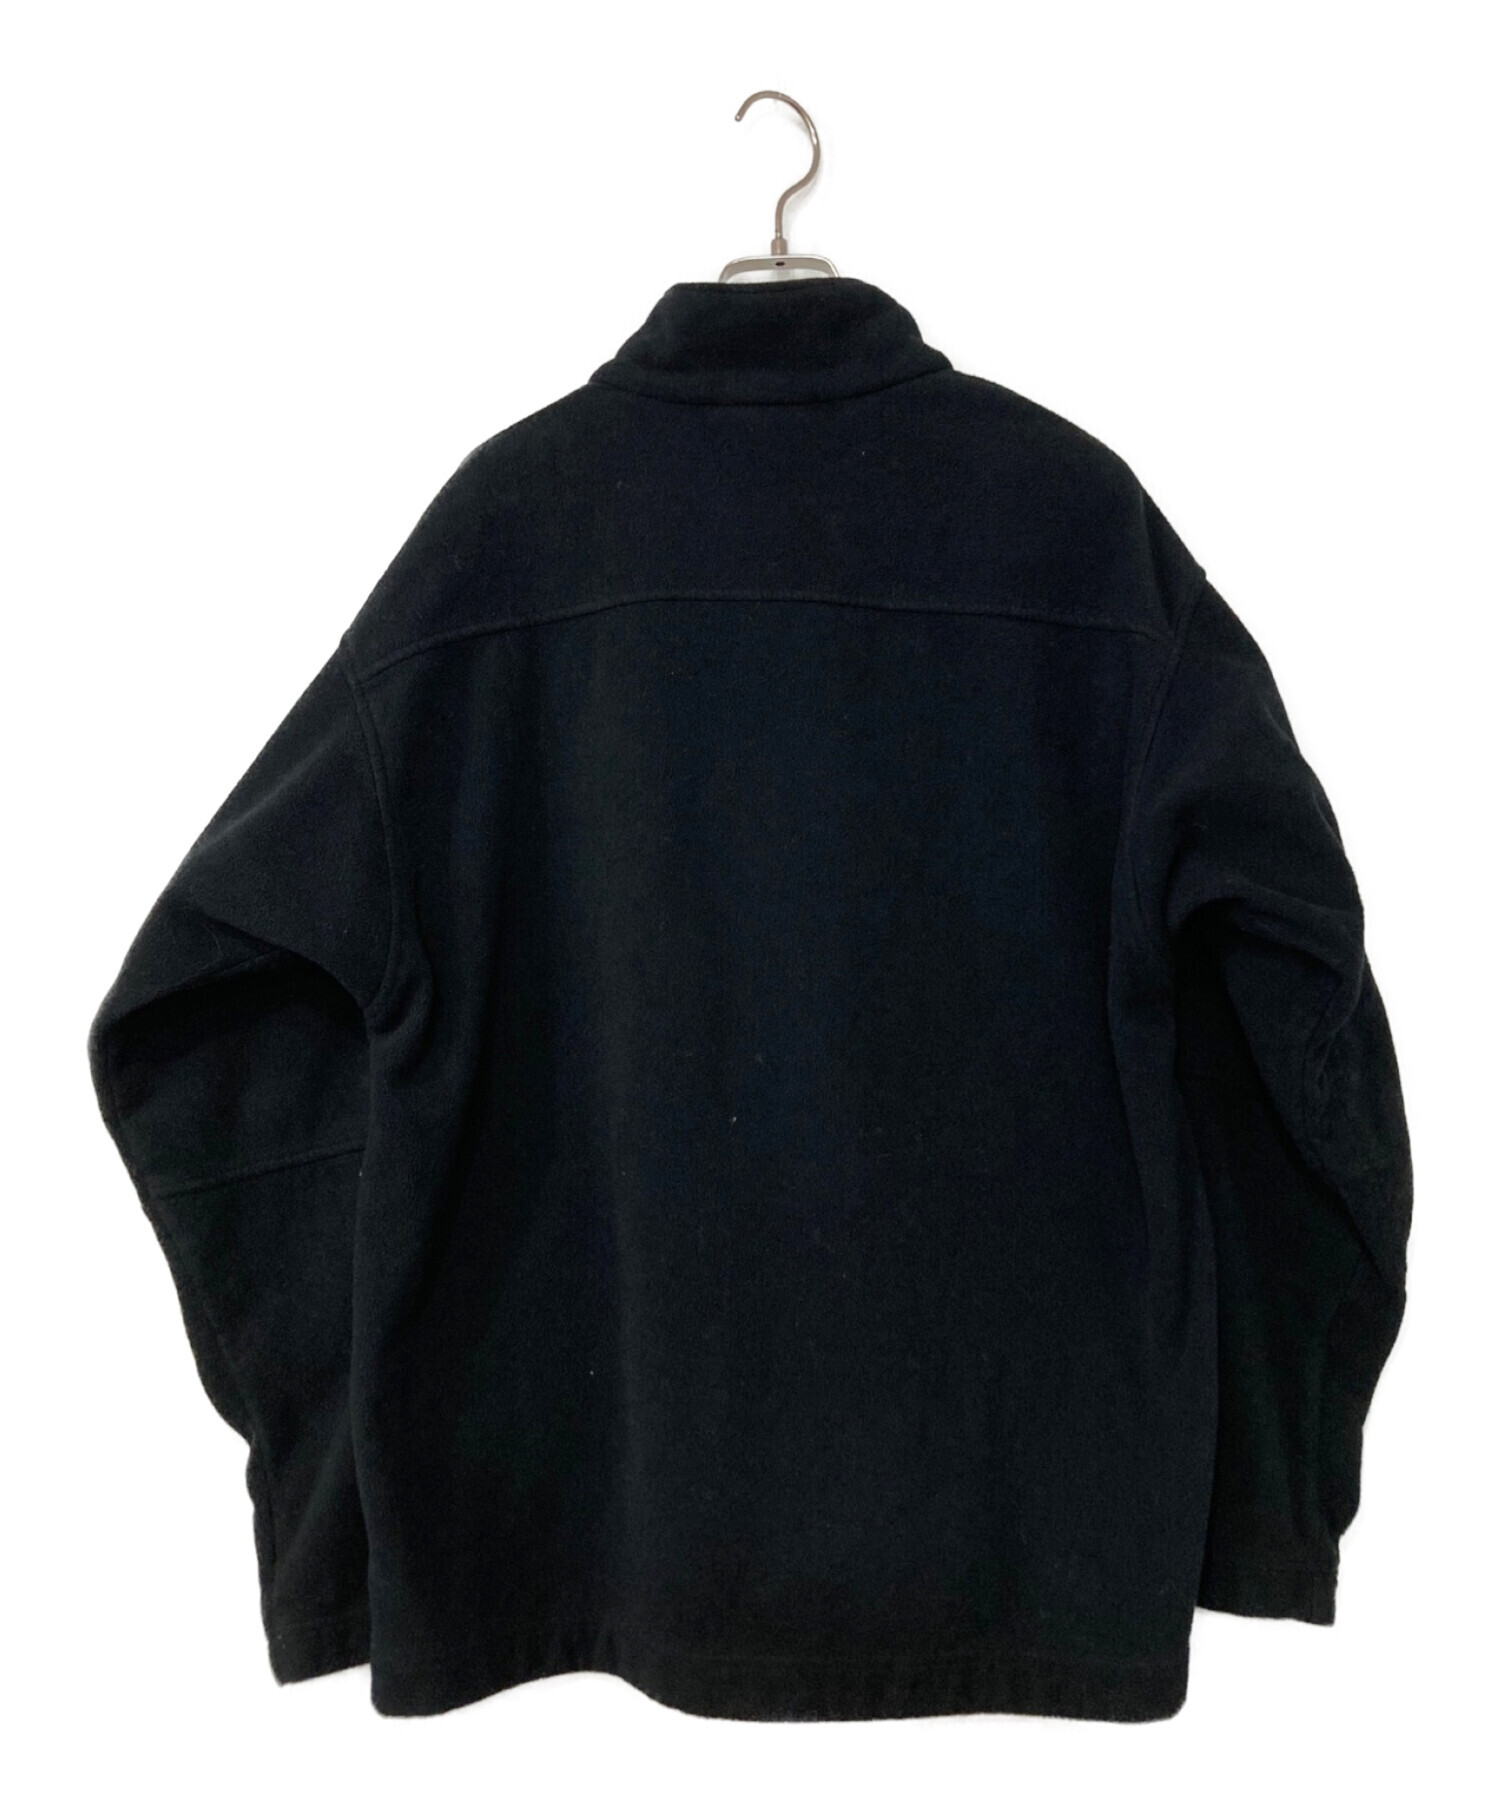 Patagonia (パタゴニア) フリースジャケット ブラック サイズ:L